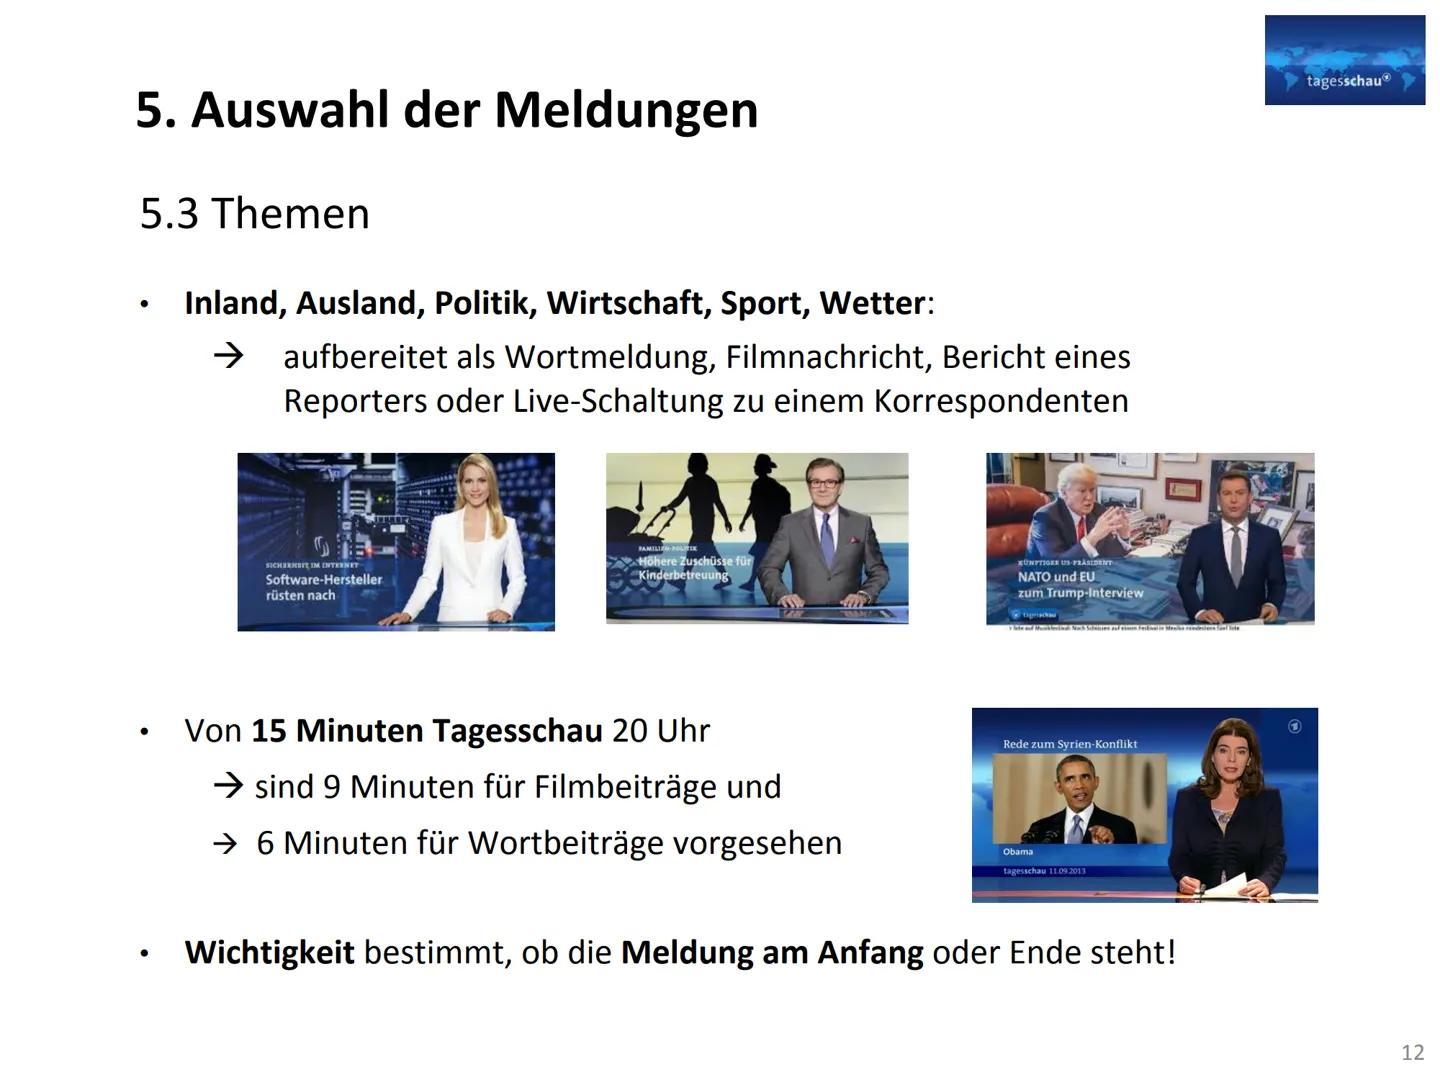 Vorstellung einer Nachrichtensendung im TV
Gliederung:
1. Geschichte der Tagesschau..
2. Formate von Nachrichtensendungen...
3. Wodurch zeic